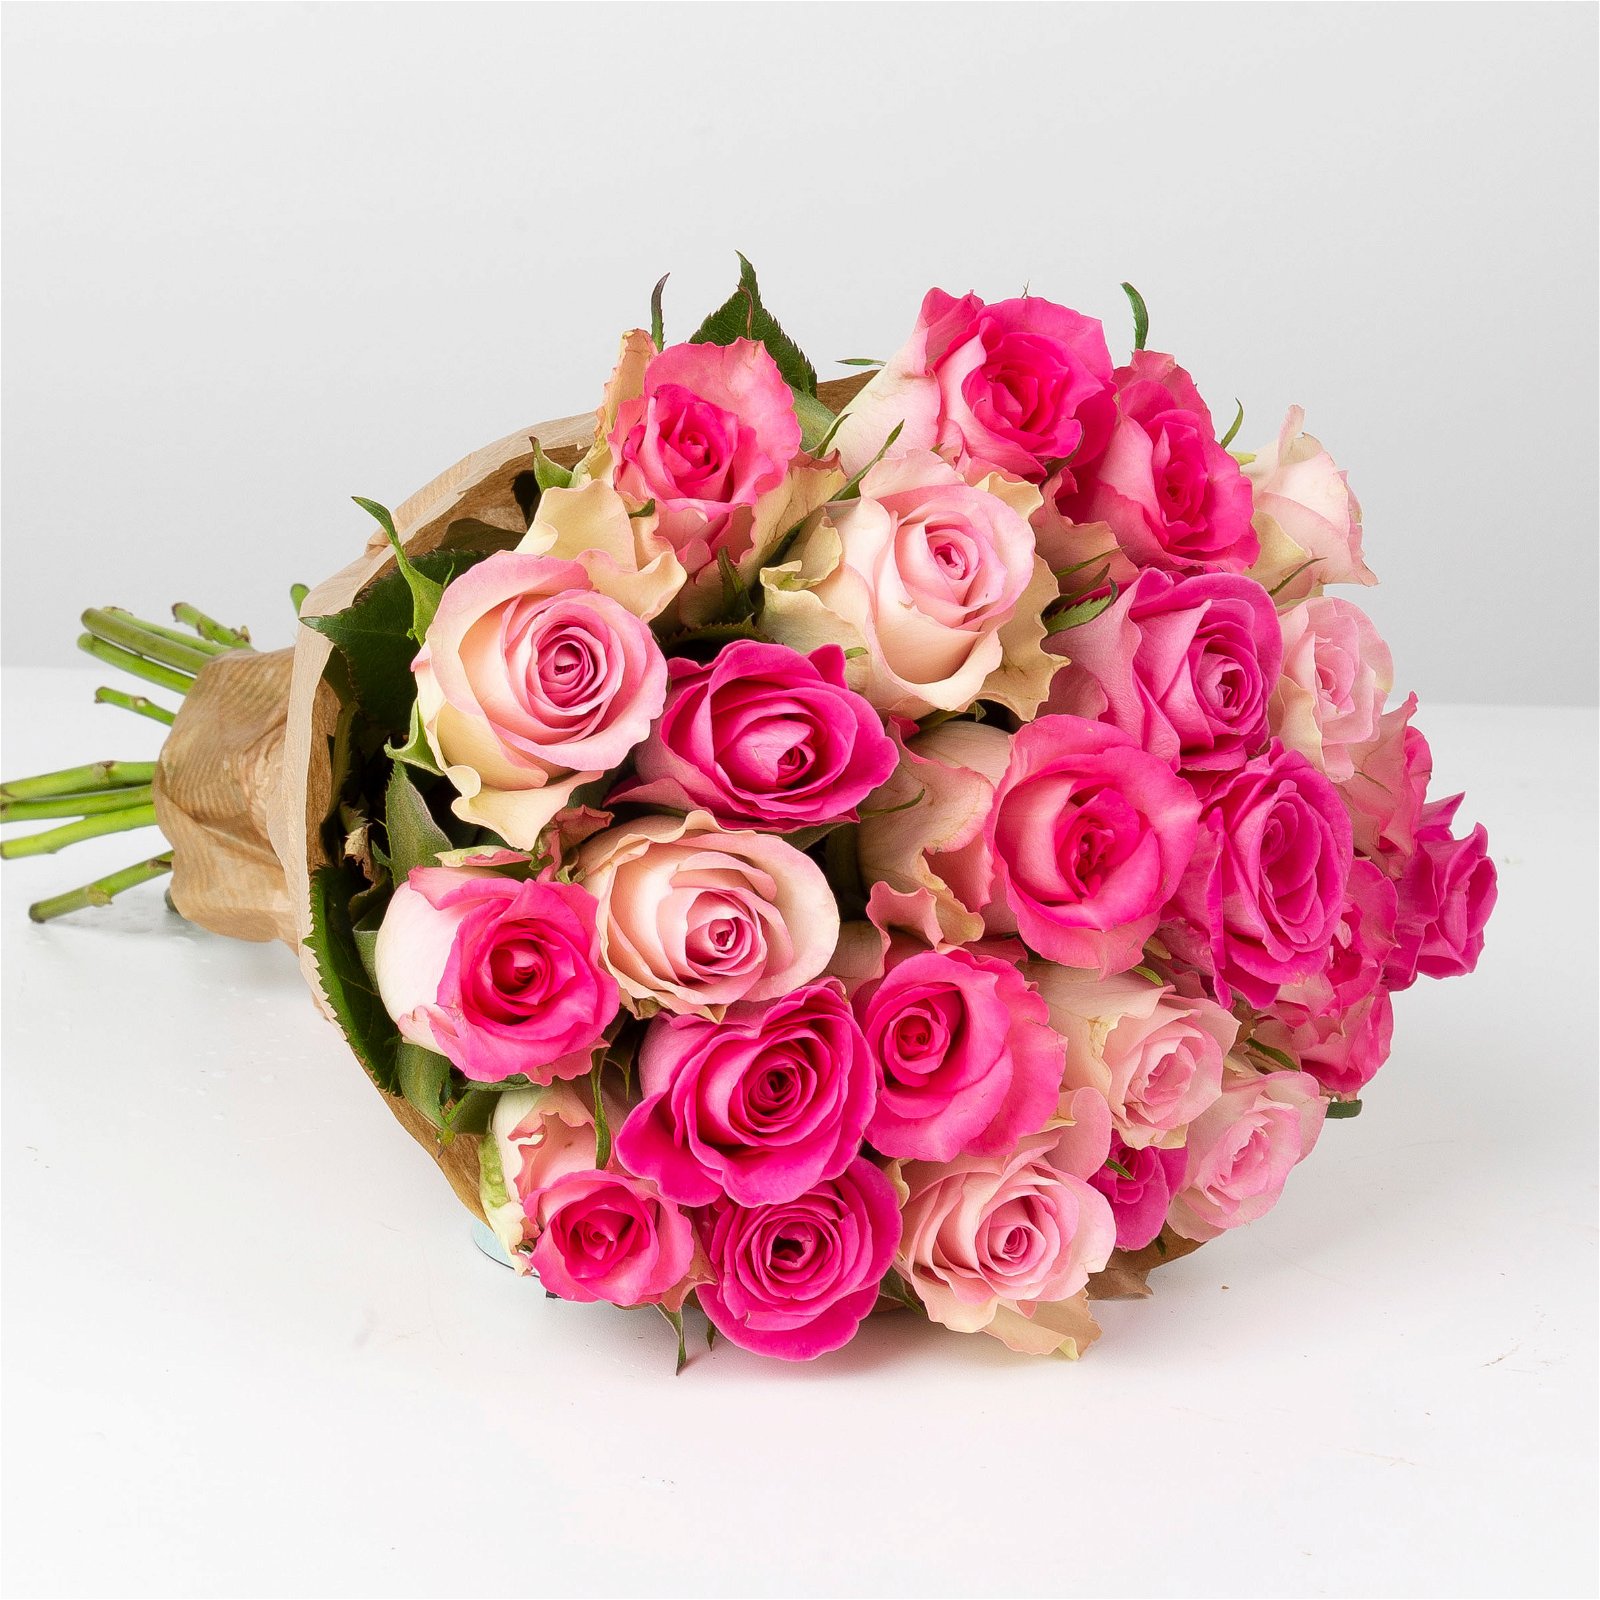 Blumenbund mit gemischten Rosen, Rosatöne, 25er-Bund, inkl. gratis Grußkarte